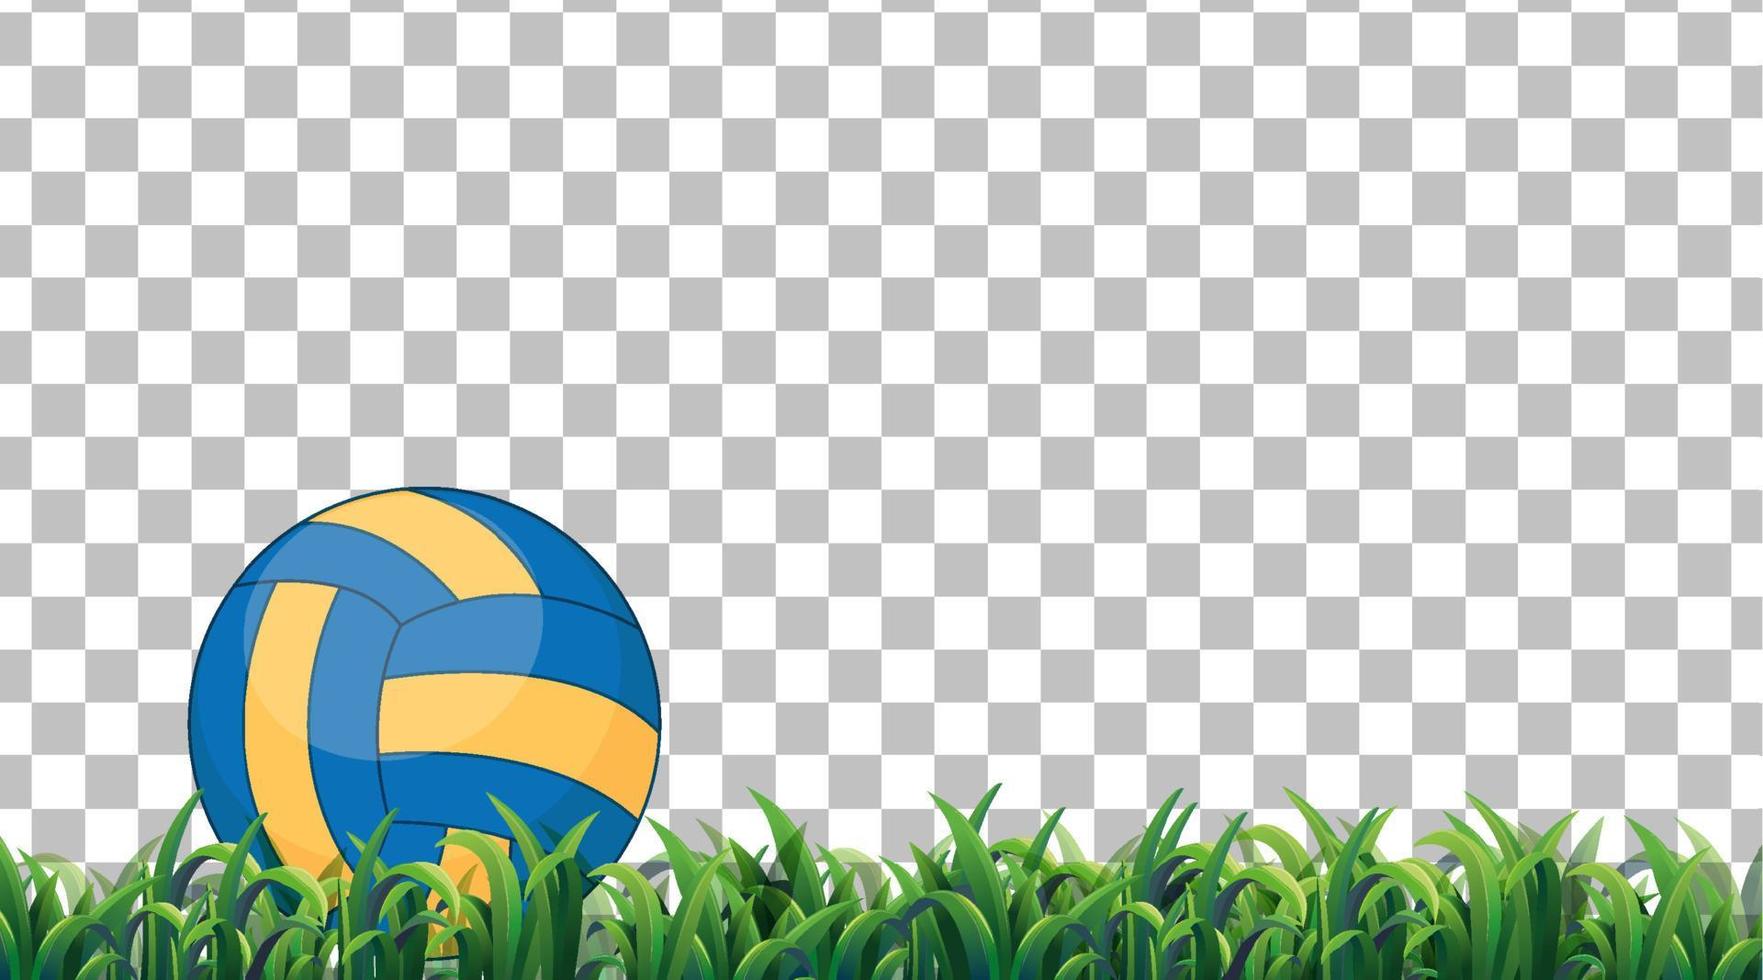 volleybal op het grasveld op rasterachtergrond vector